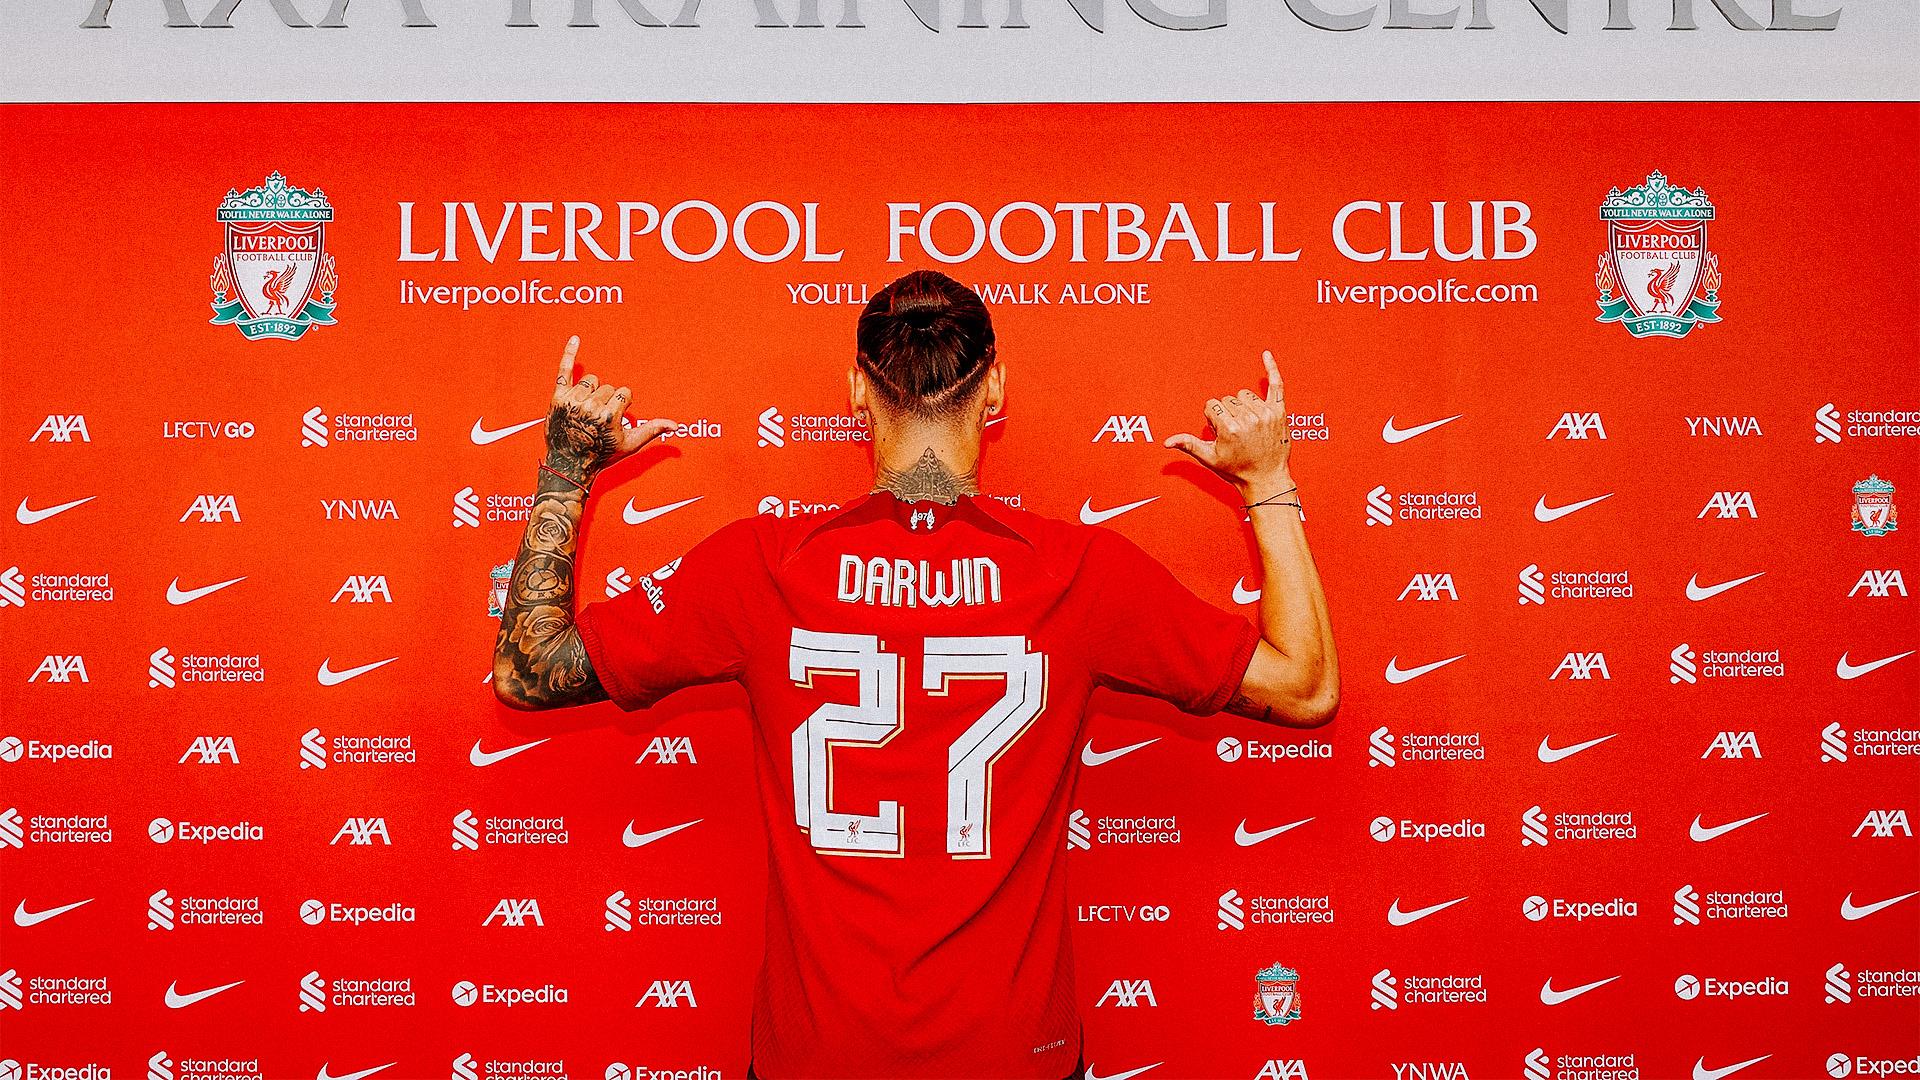 Aan verliezen vriendschap Liverpool FC — Revealed: Darwin Nunez's Liverpool shirt number